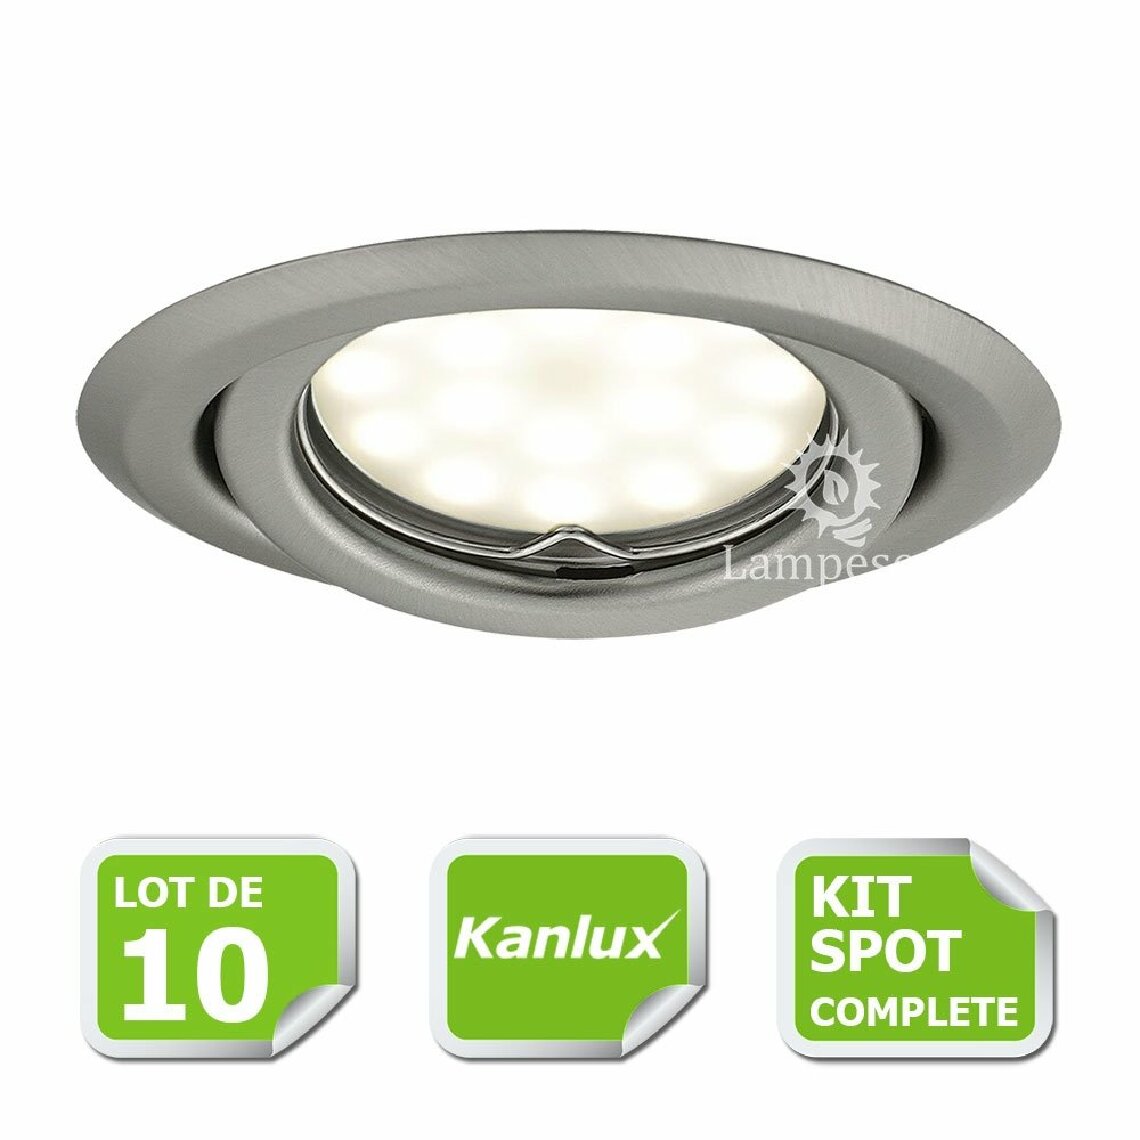 Kanlux - Kit complete de 10 Spots encastrable chrome mat orientable marque Kanlux avec GU10 LED 5W 3000K blanc chaud - Boîtes d'encastrement